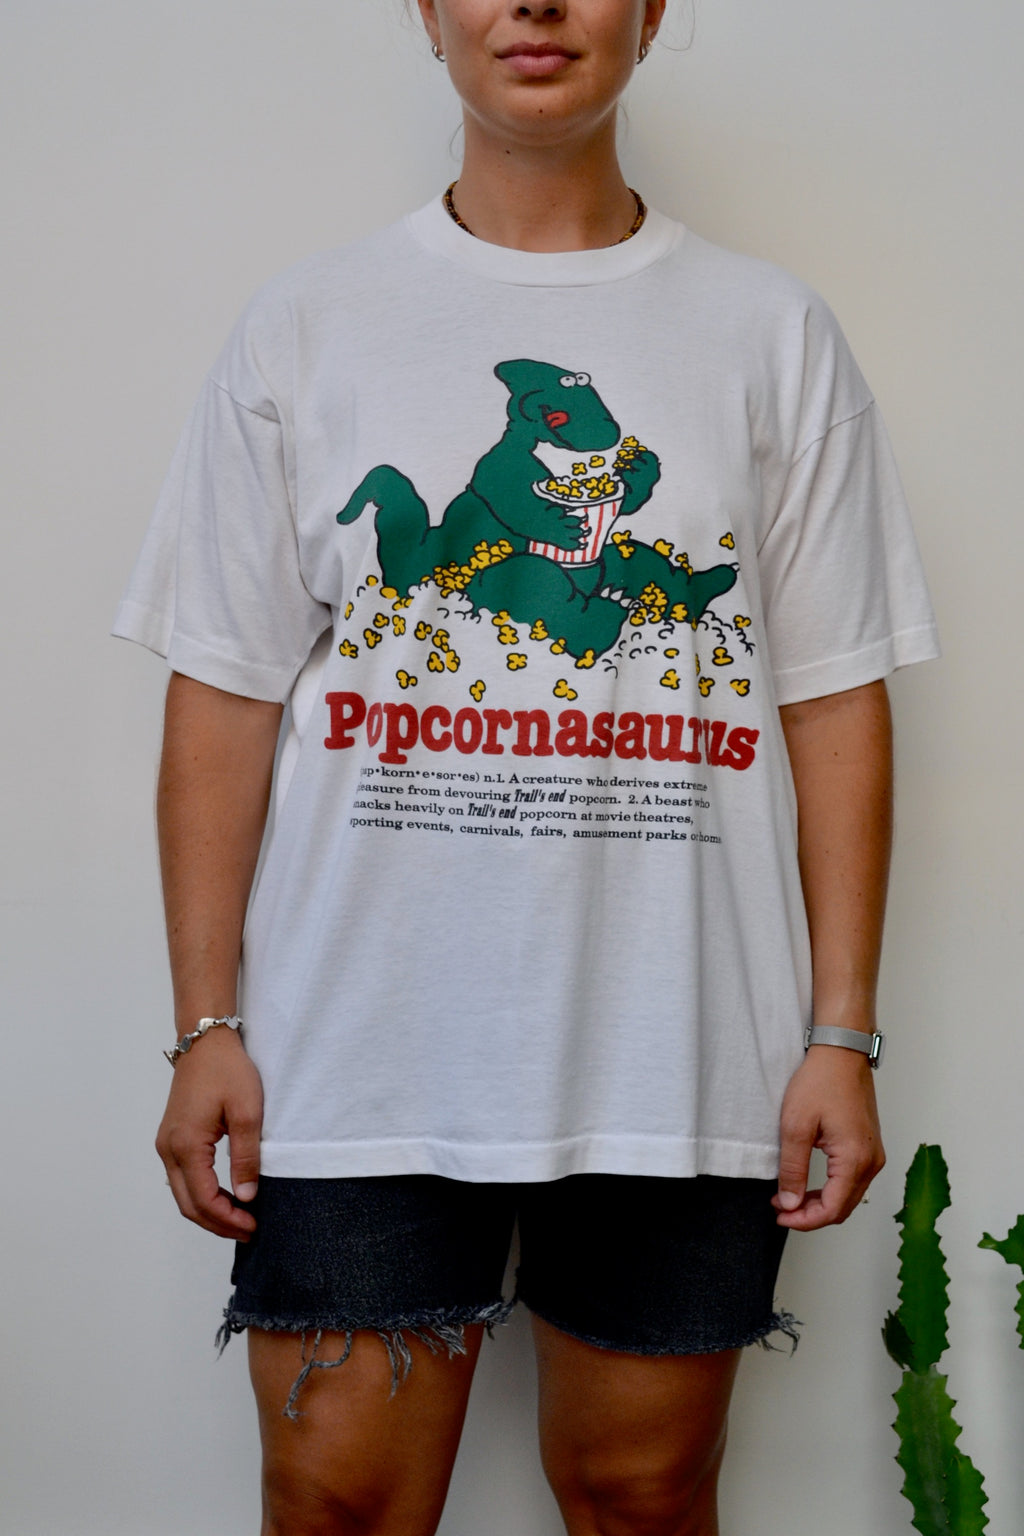 Popcornasaurus Tee